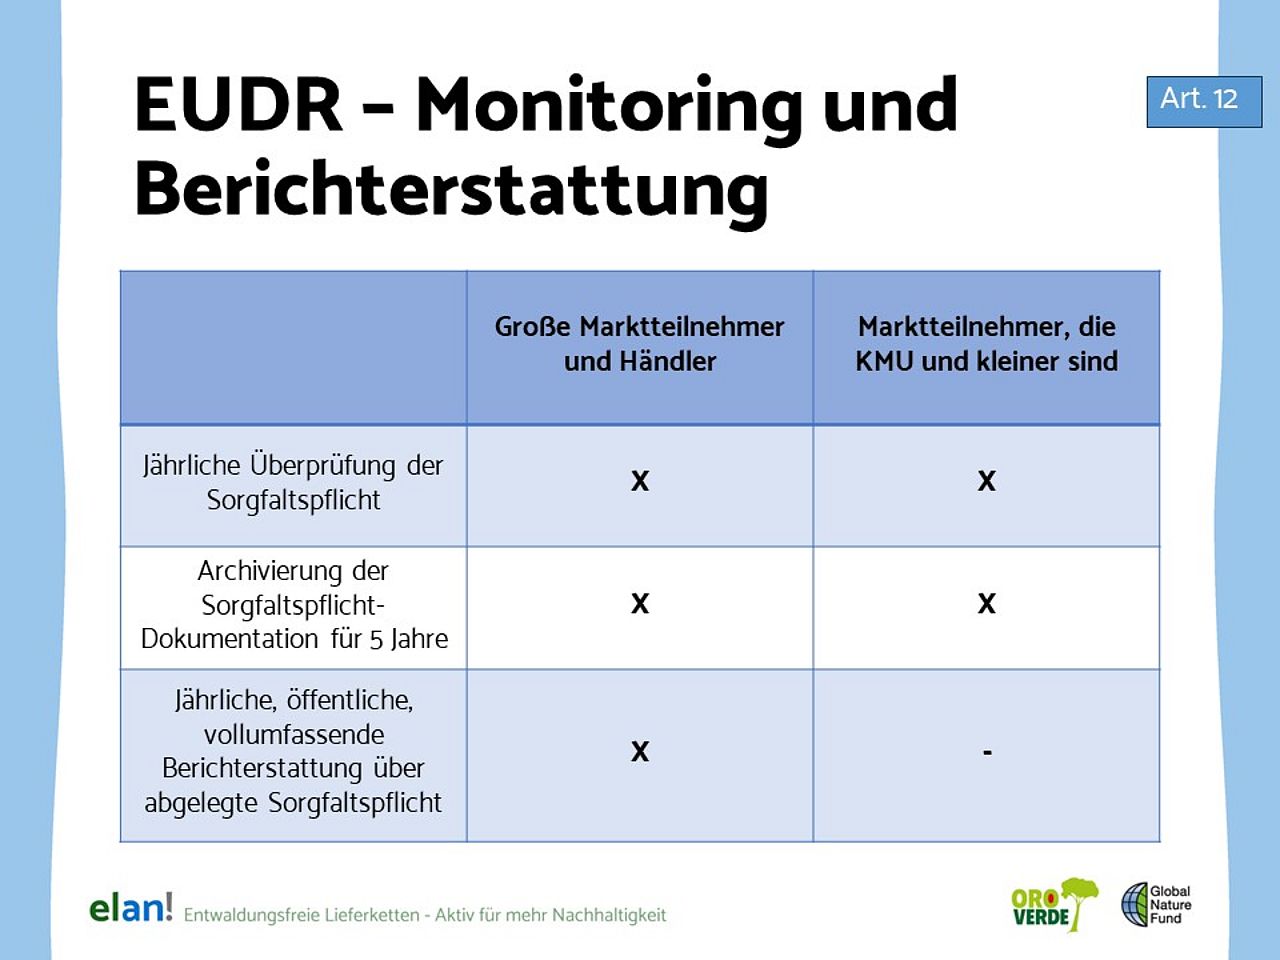 EUDR Monitoring und Berichterstattung - Was gilt für wen?